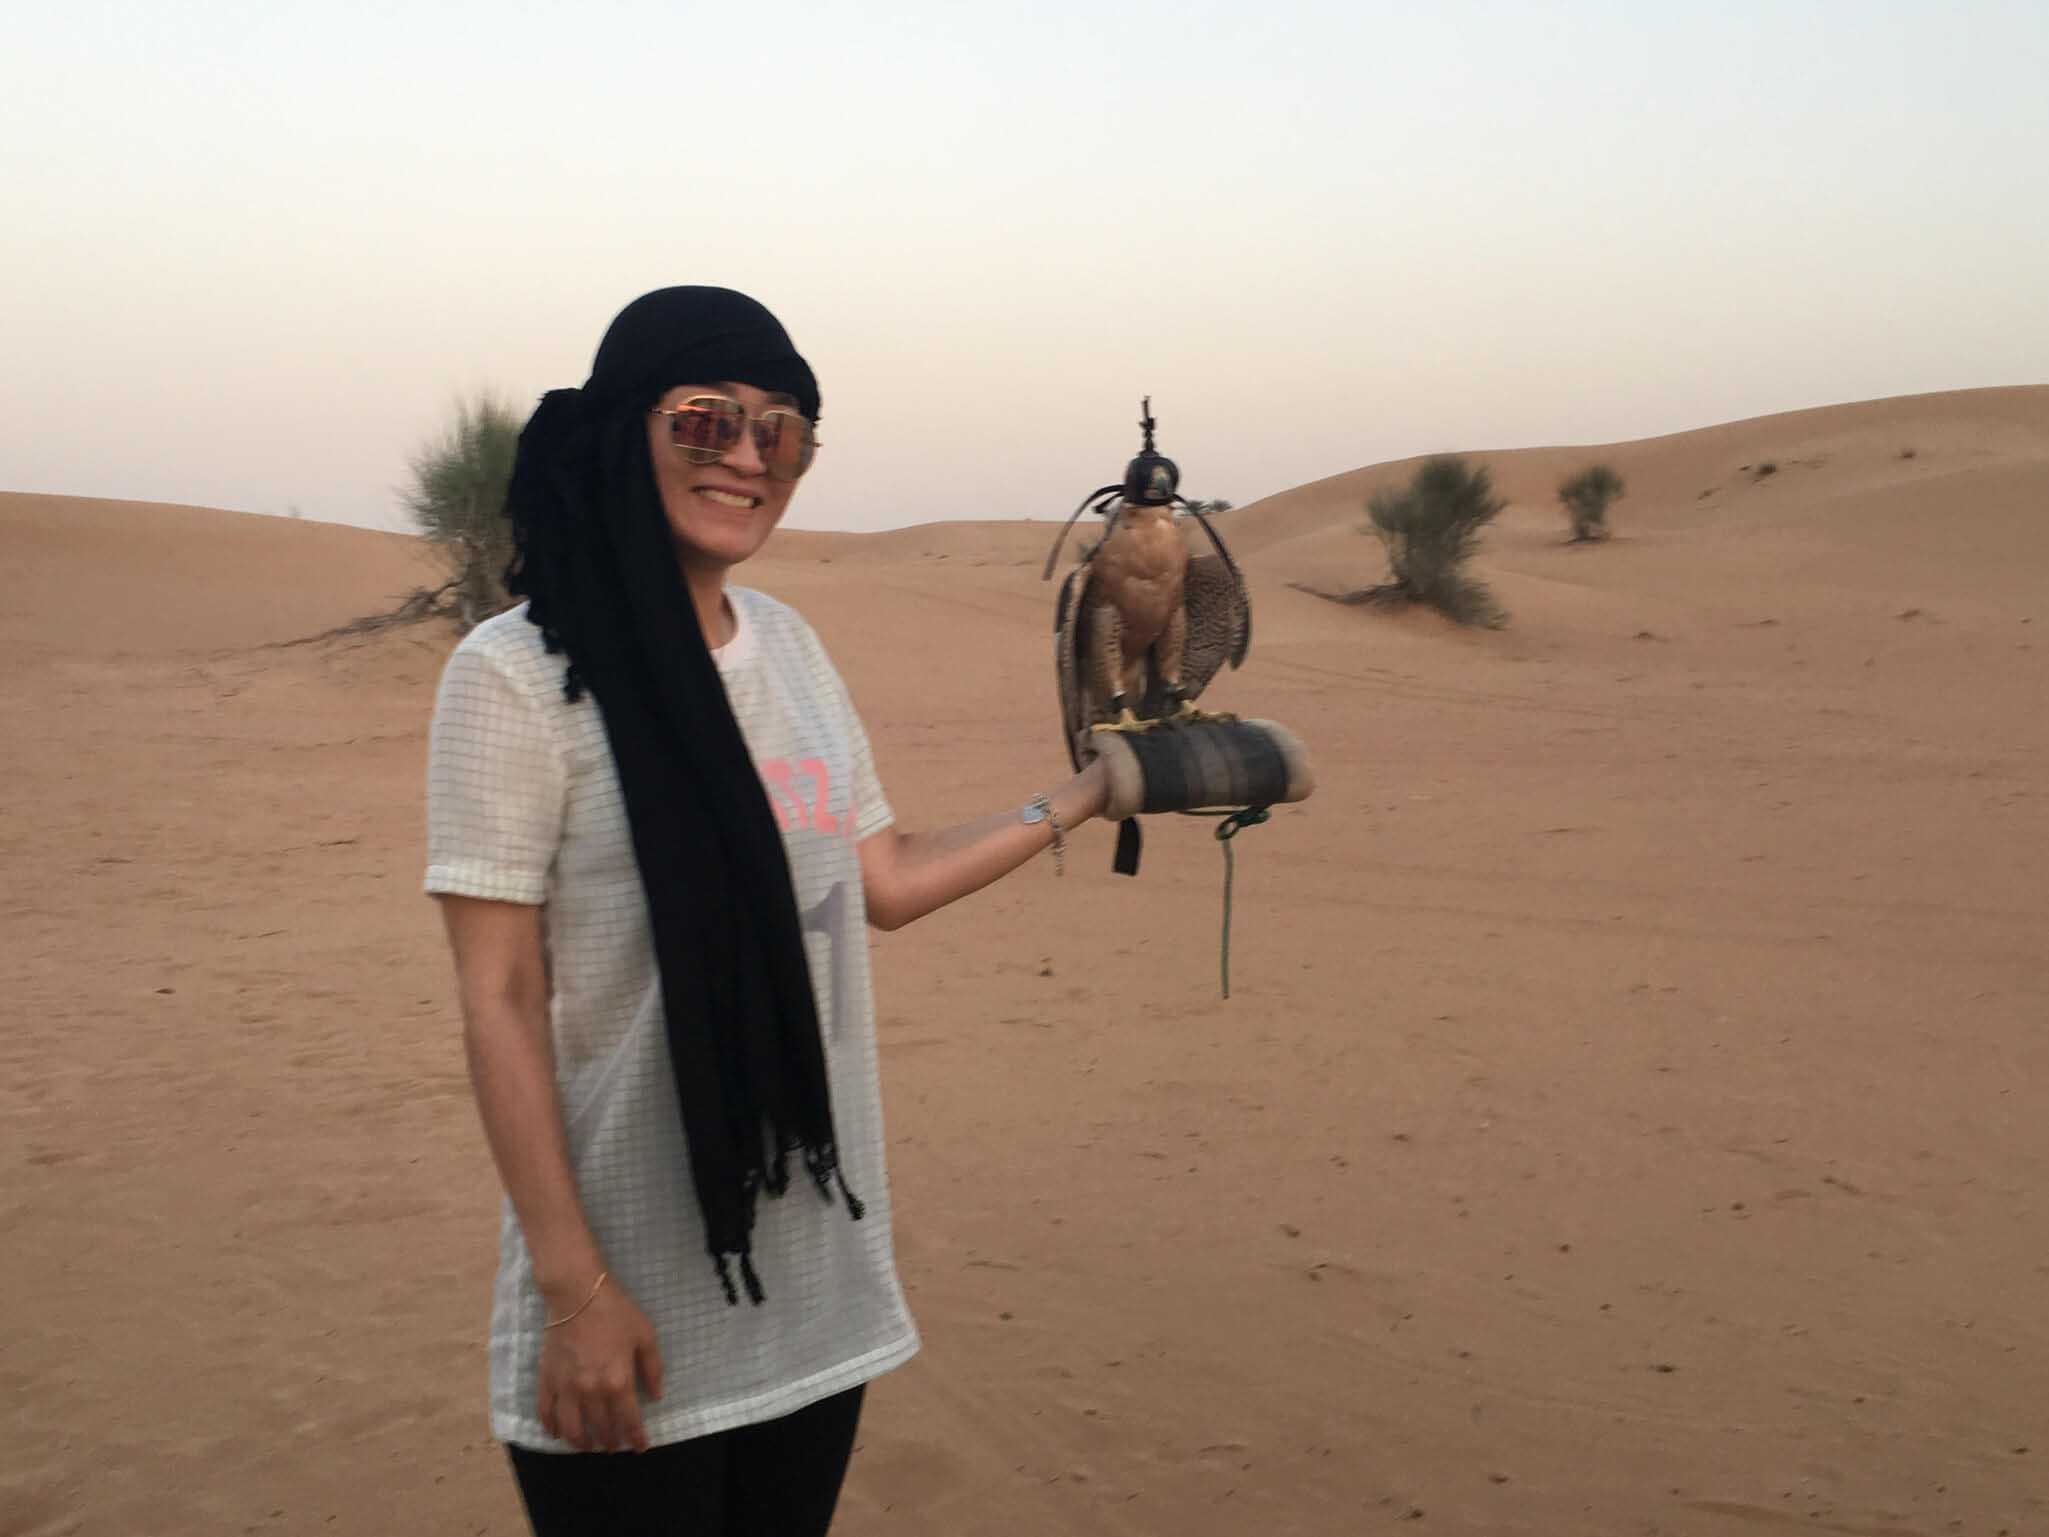 Student holding a bird in a Dubai desert